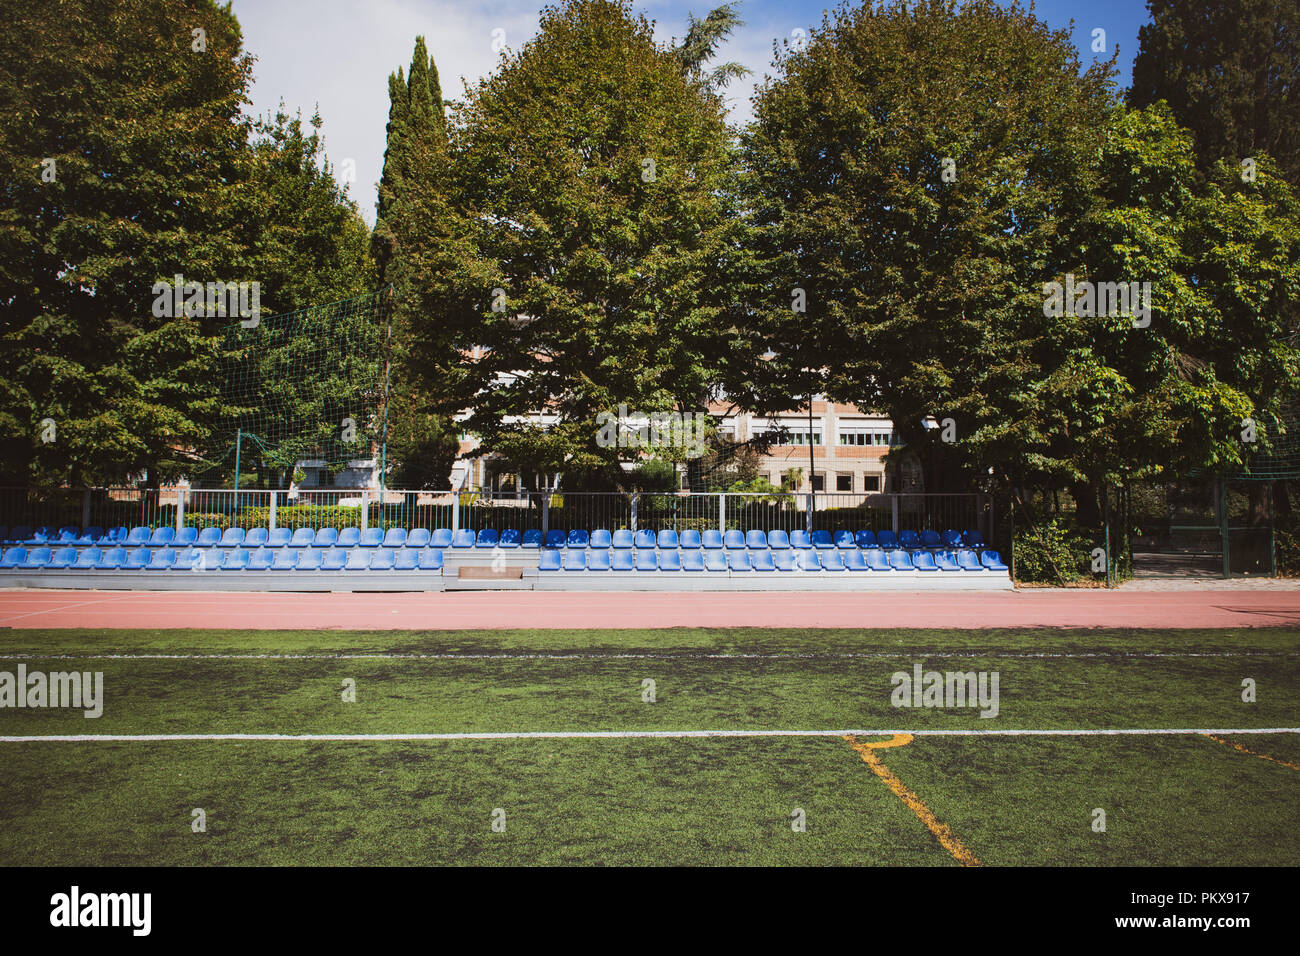 Soporte azul asientos amplia línea de disparo en parque con campo de deportes verde Foto de stock